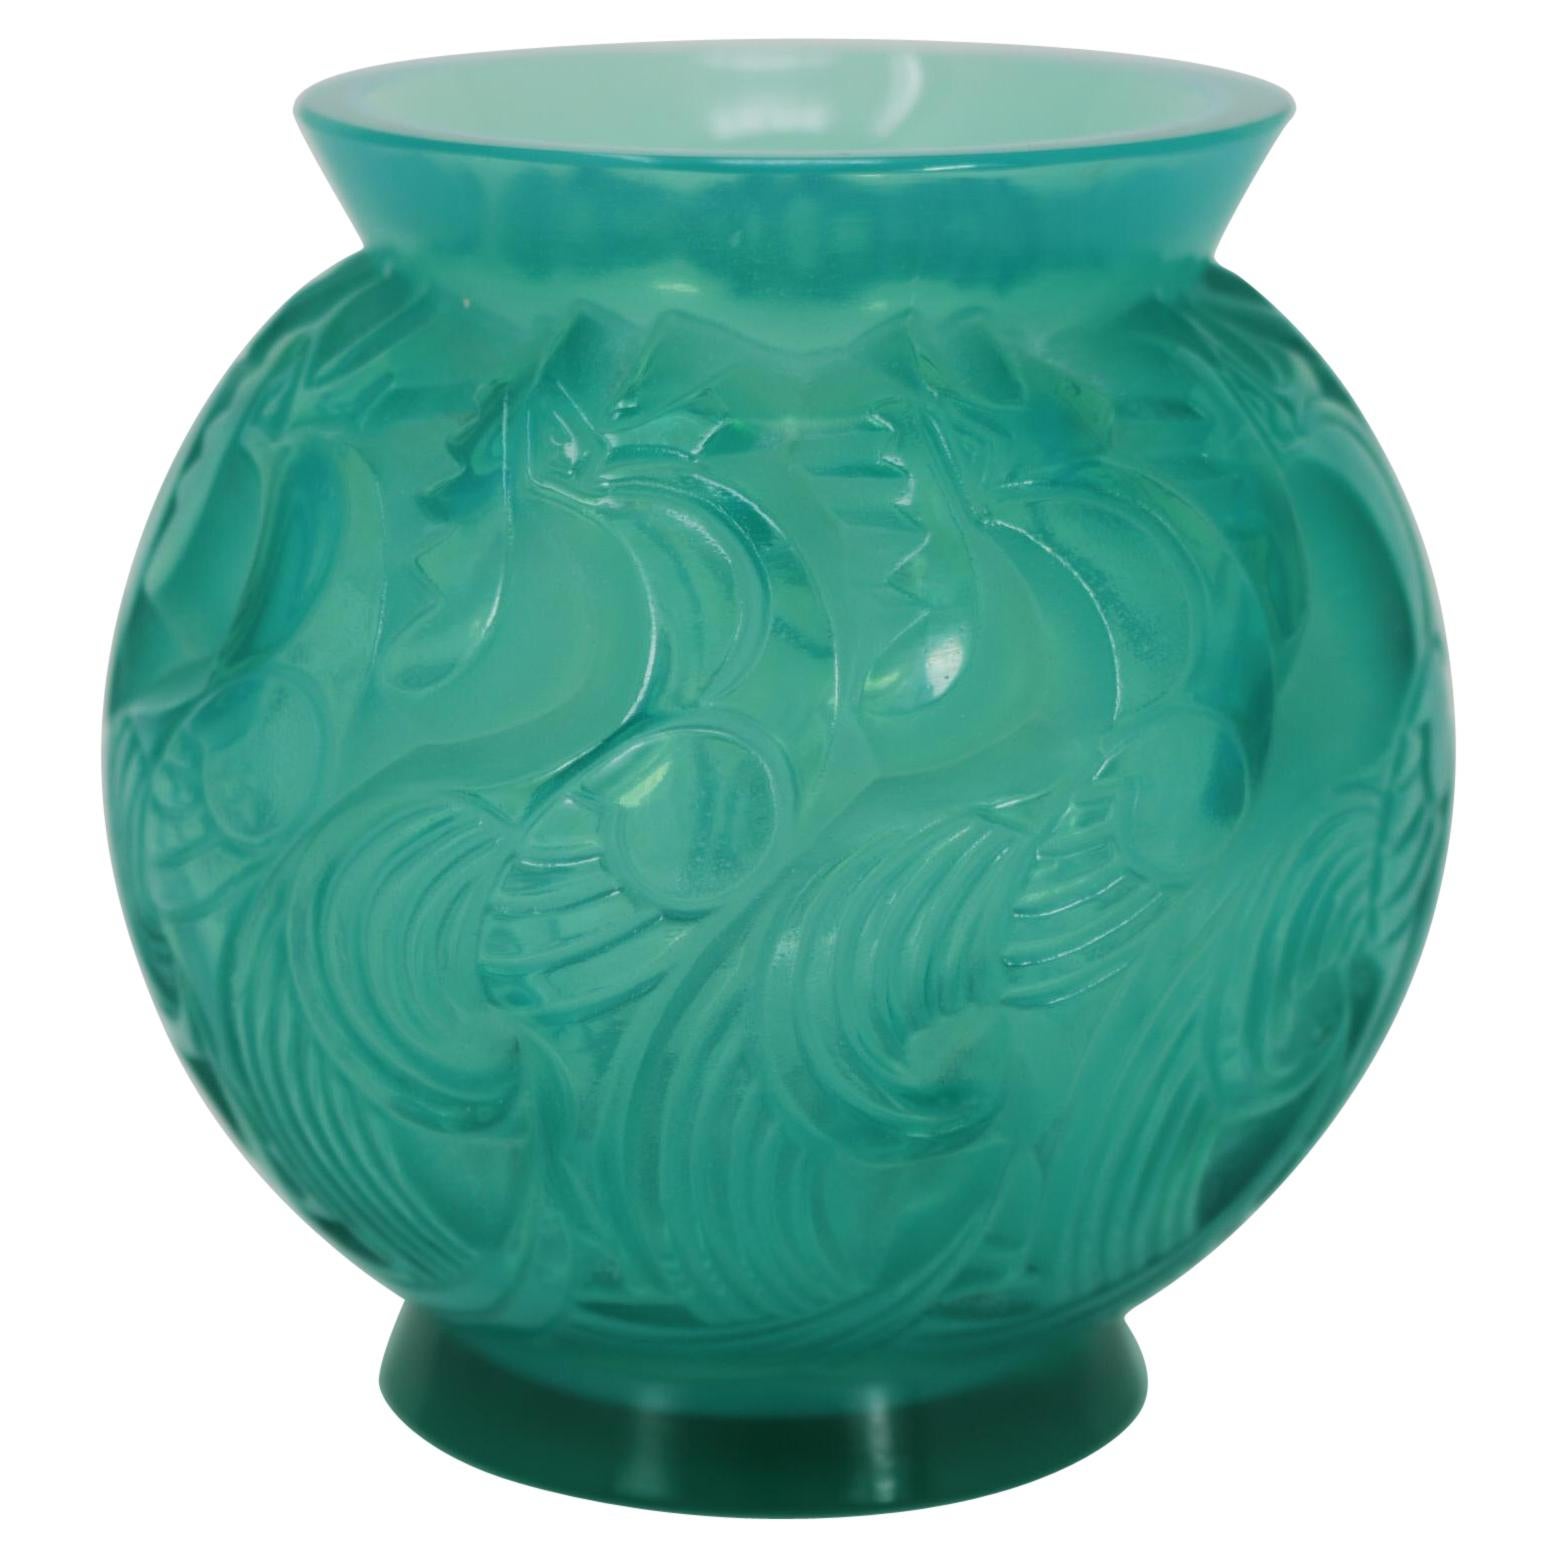 Rene Lalique Opalescent Mint Coloured Glass 'Le Mans' Vase